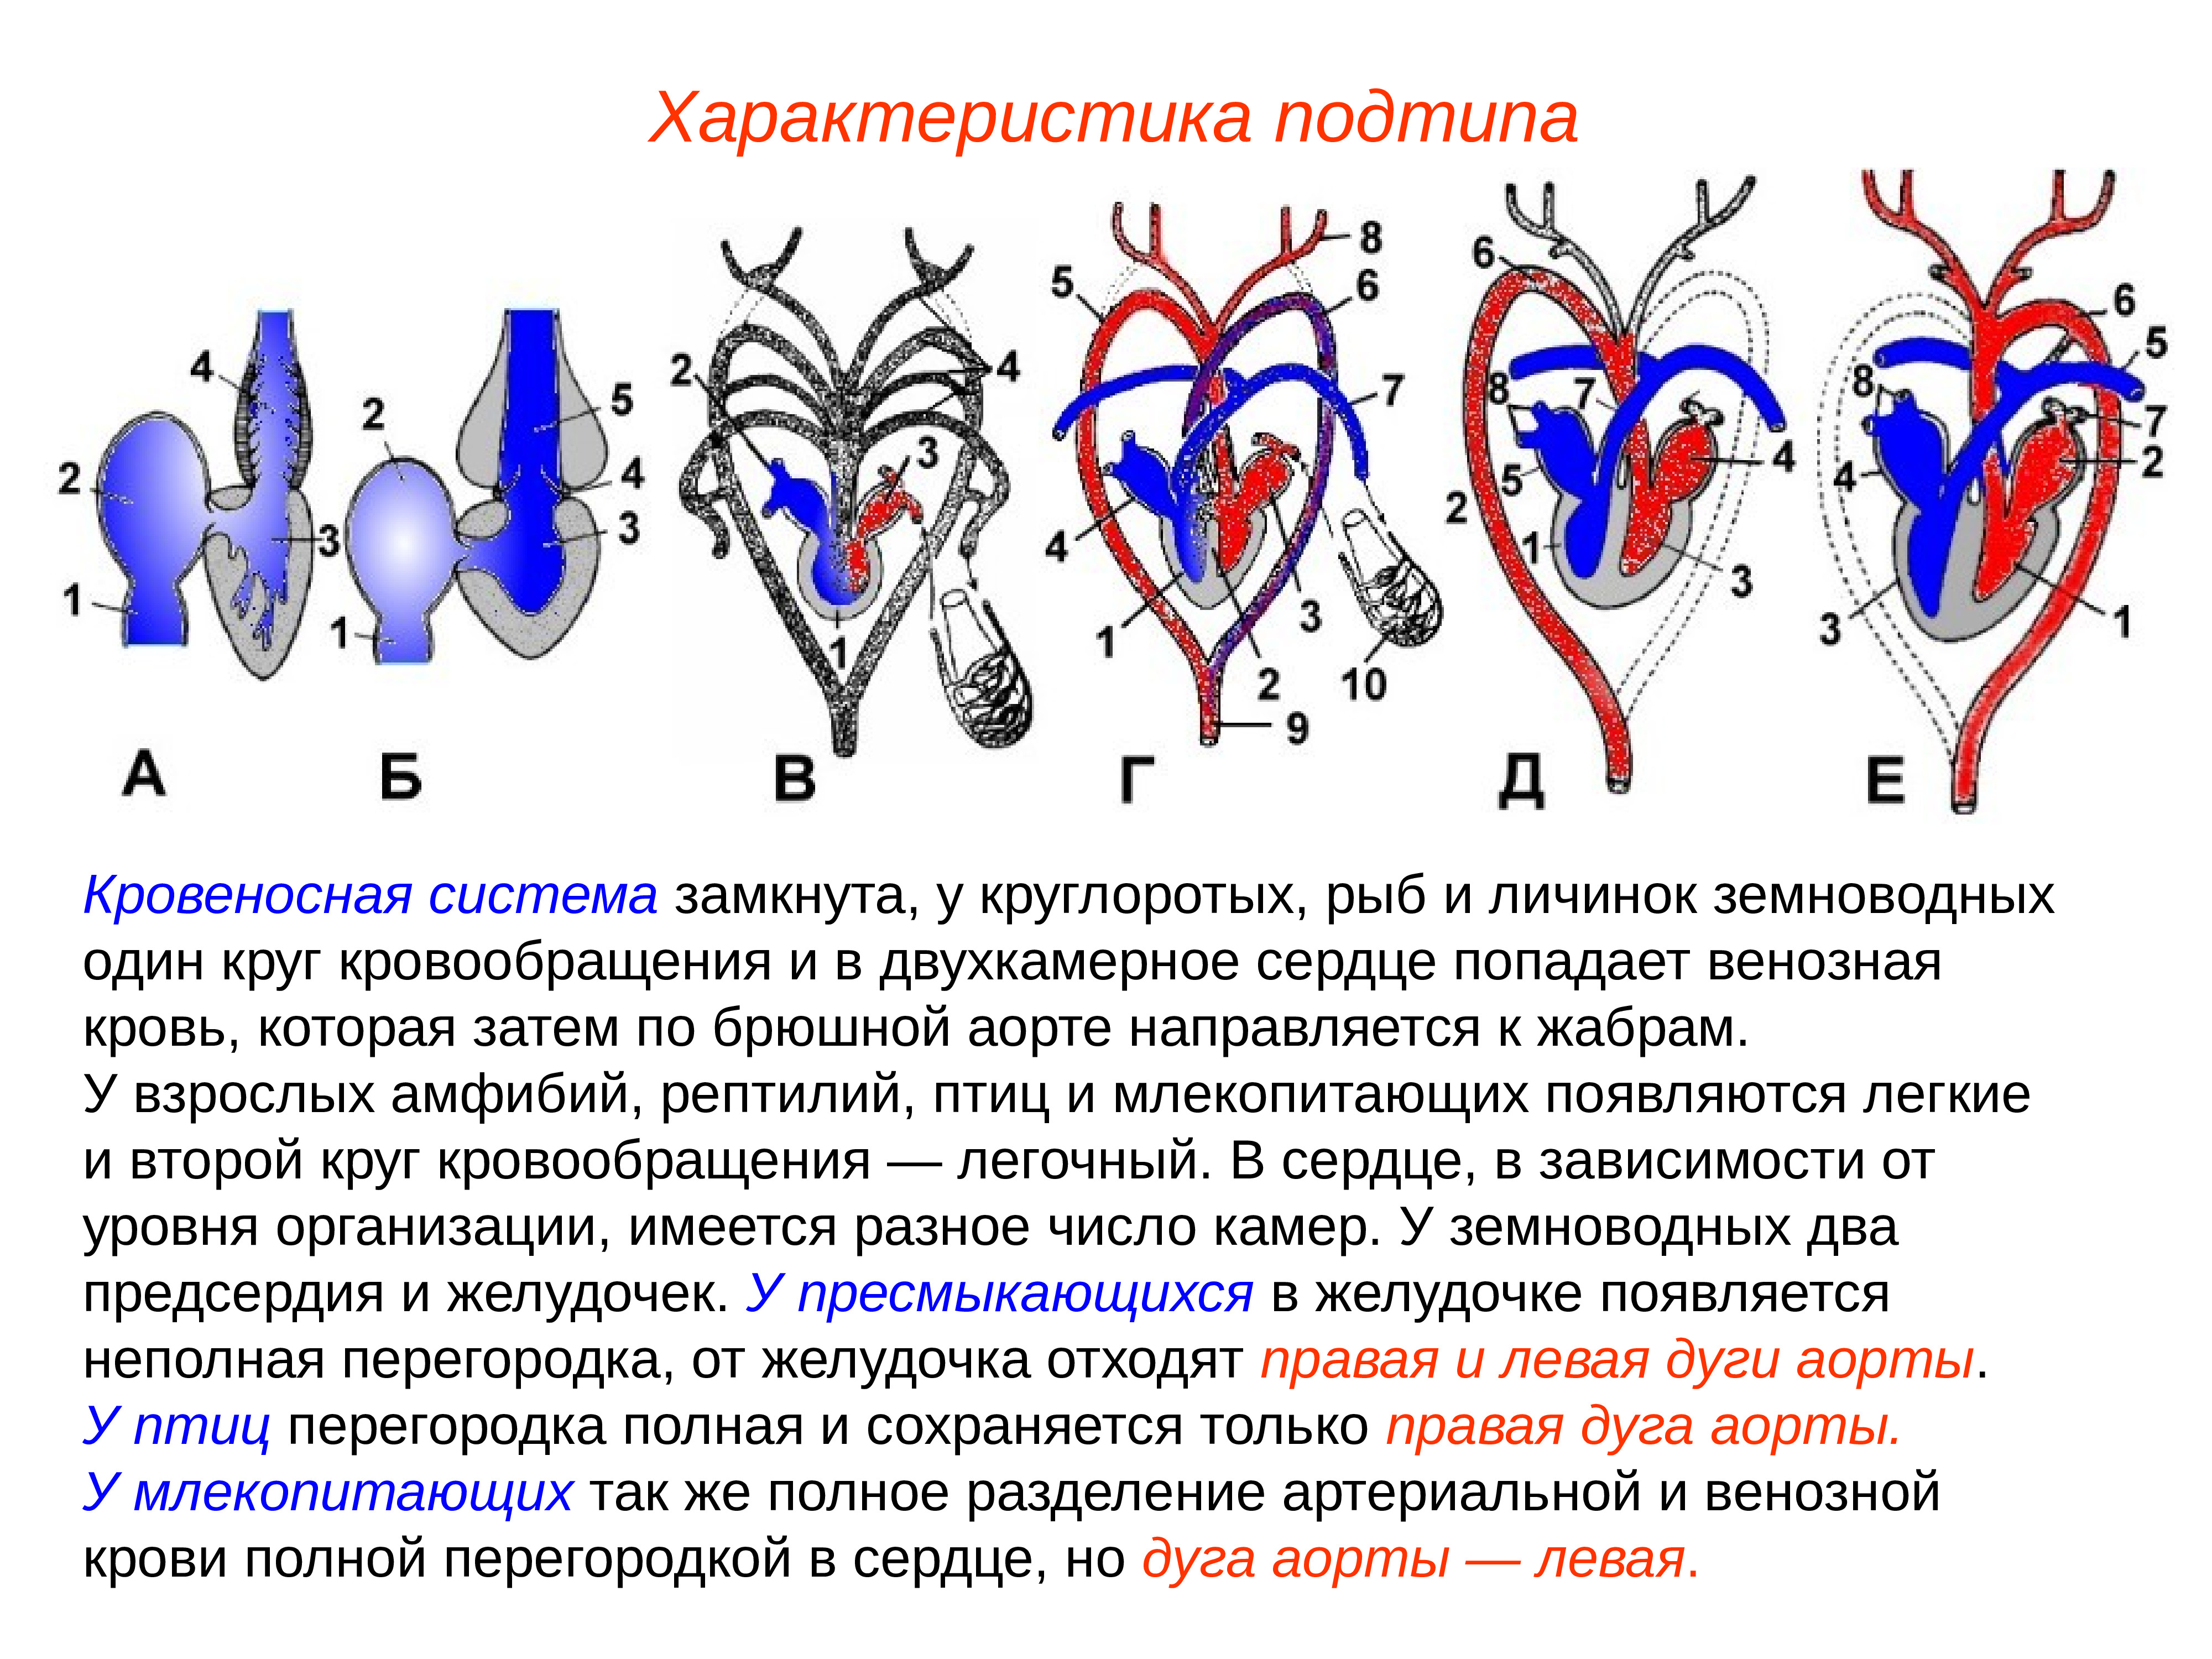 Эволюция сердца у земноводных. Сравнительная анатомия кровеносной системы. Дуги аорты у амфибий. Сравнительная анатомия кровеносной системы позвоночных. Кровеносная система рыб земноводных пресмыкающихся.